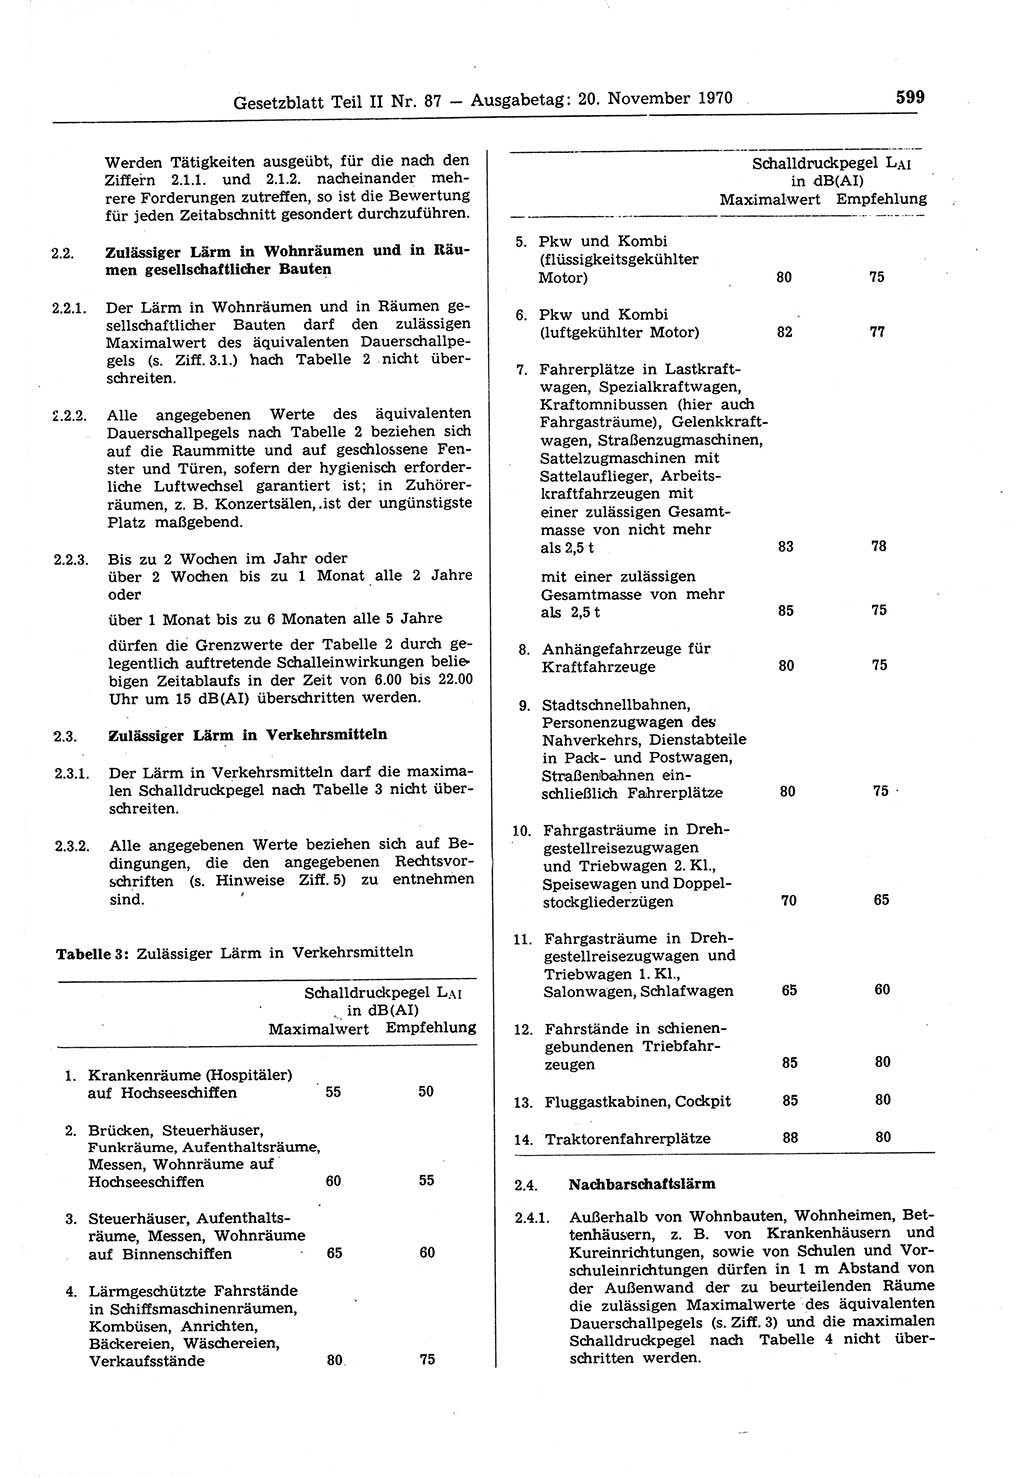 Gesetzblatt (GBl.) der Deutschen Demokratischen Republik (DDR) Teil ⅠⅠ 1970, Seite 599 (GBl. DDR ⅠⅠ 1970, S. 599)